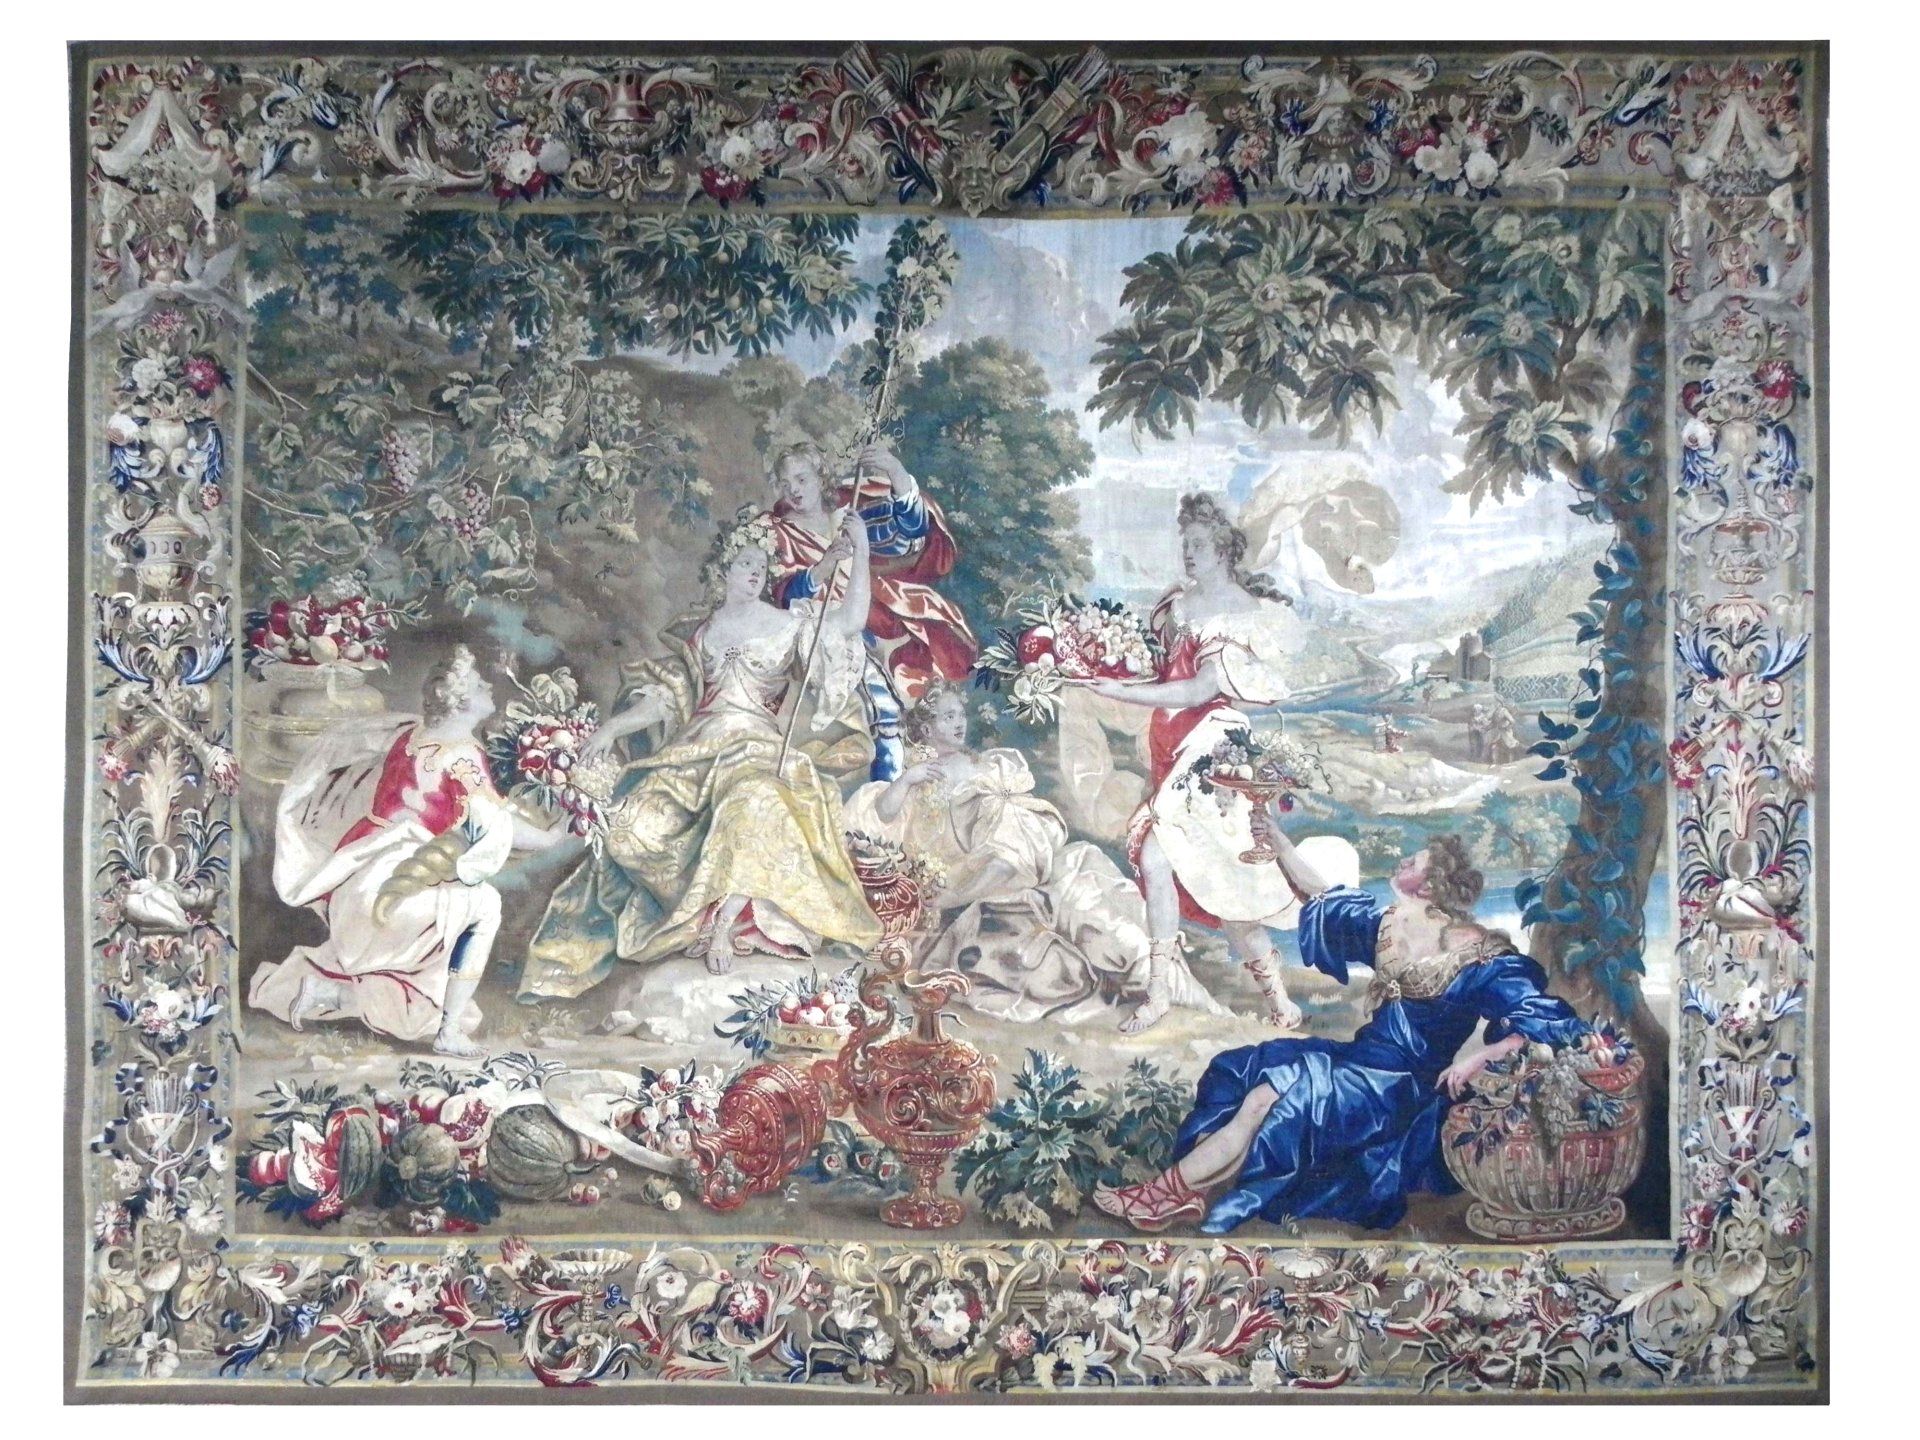 TAPISSERIE BRUXELLES - QUATRE SAISONS, l’Automne  Très rare et exceptionnel panneau de tapisserie de haute lisse avec 7 à 8 fils de chaines par 7 à 9 mm, des Manufactures Royales de Bruxelles de la fin du XVII° siècle, tissée par les ateliers de Jean François van der Hecht dans la boutique Albert Auwerx (1629-1709).